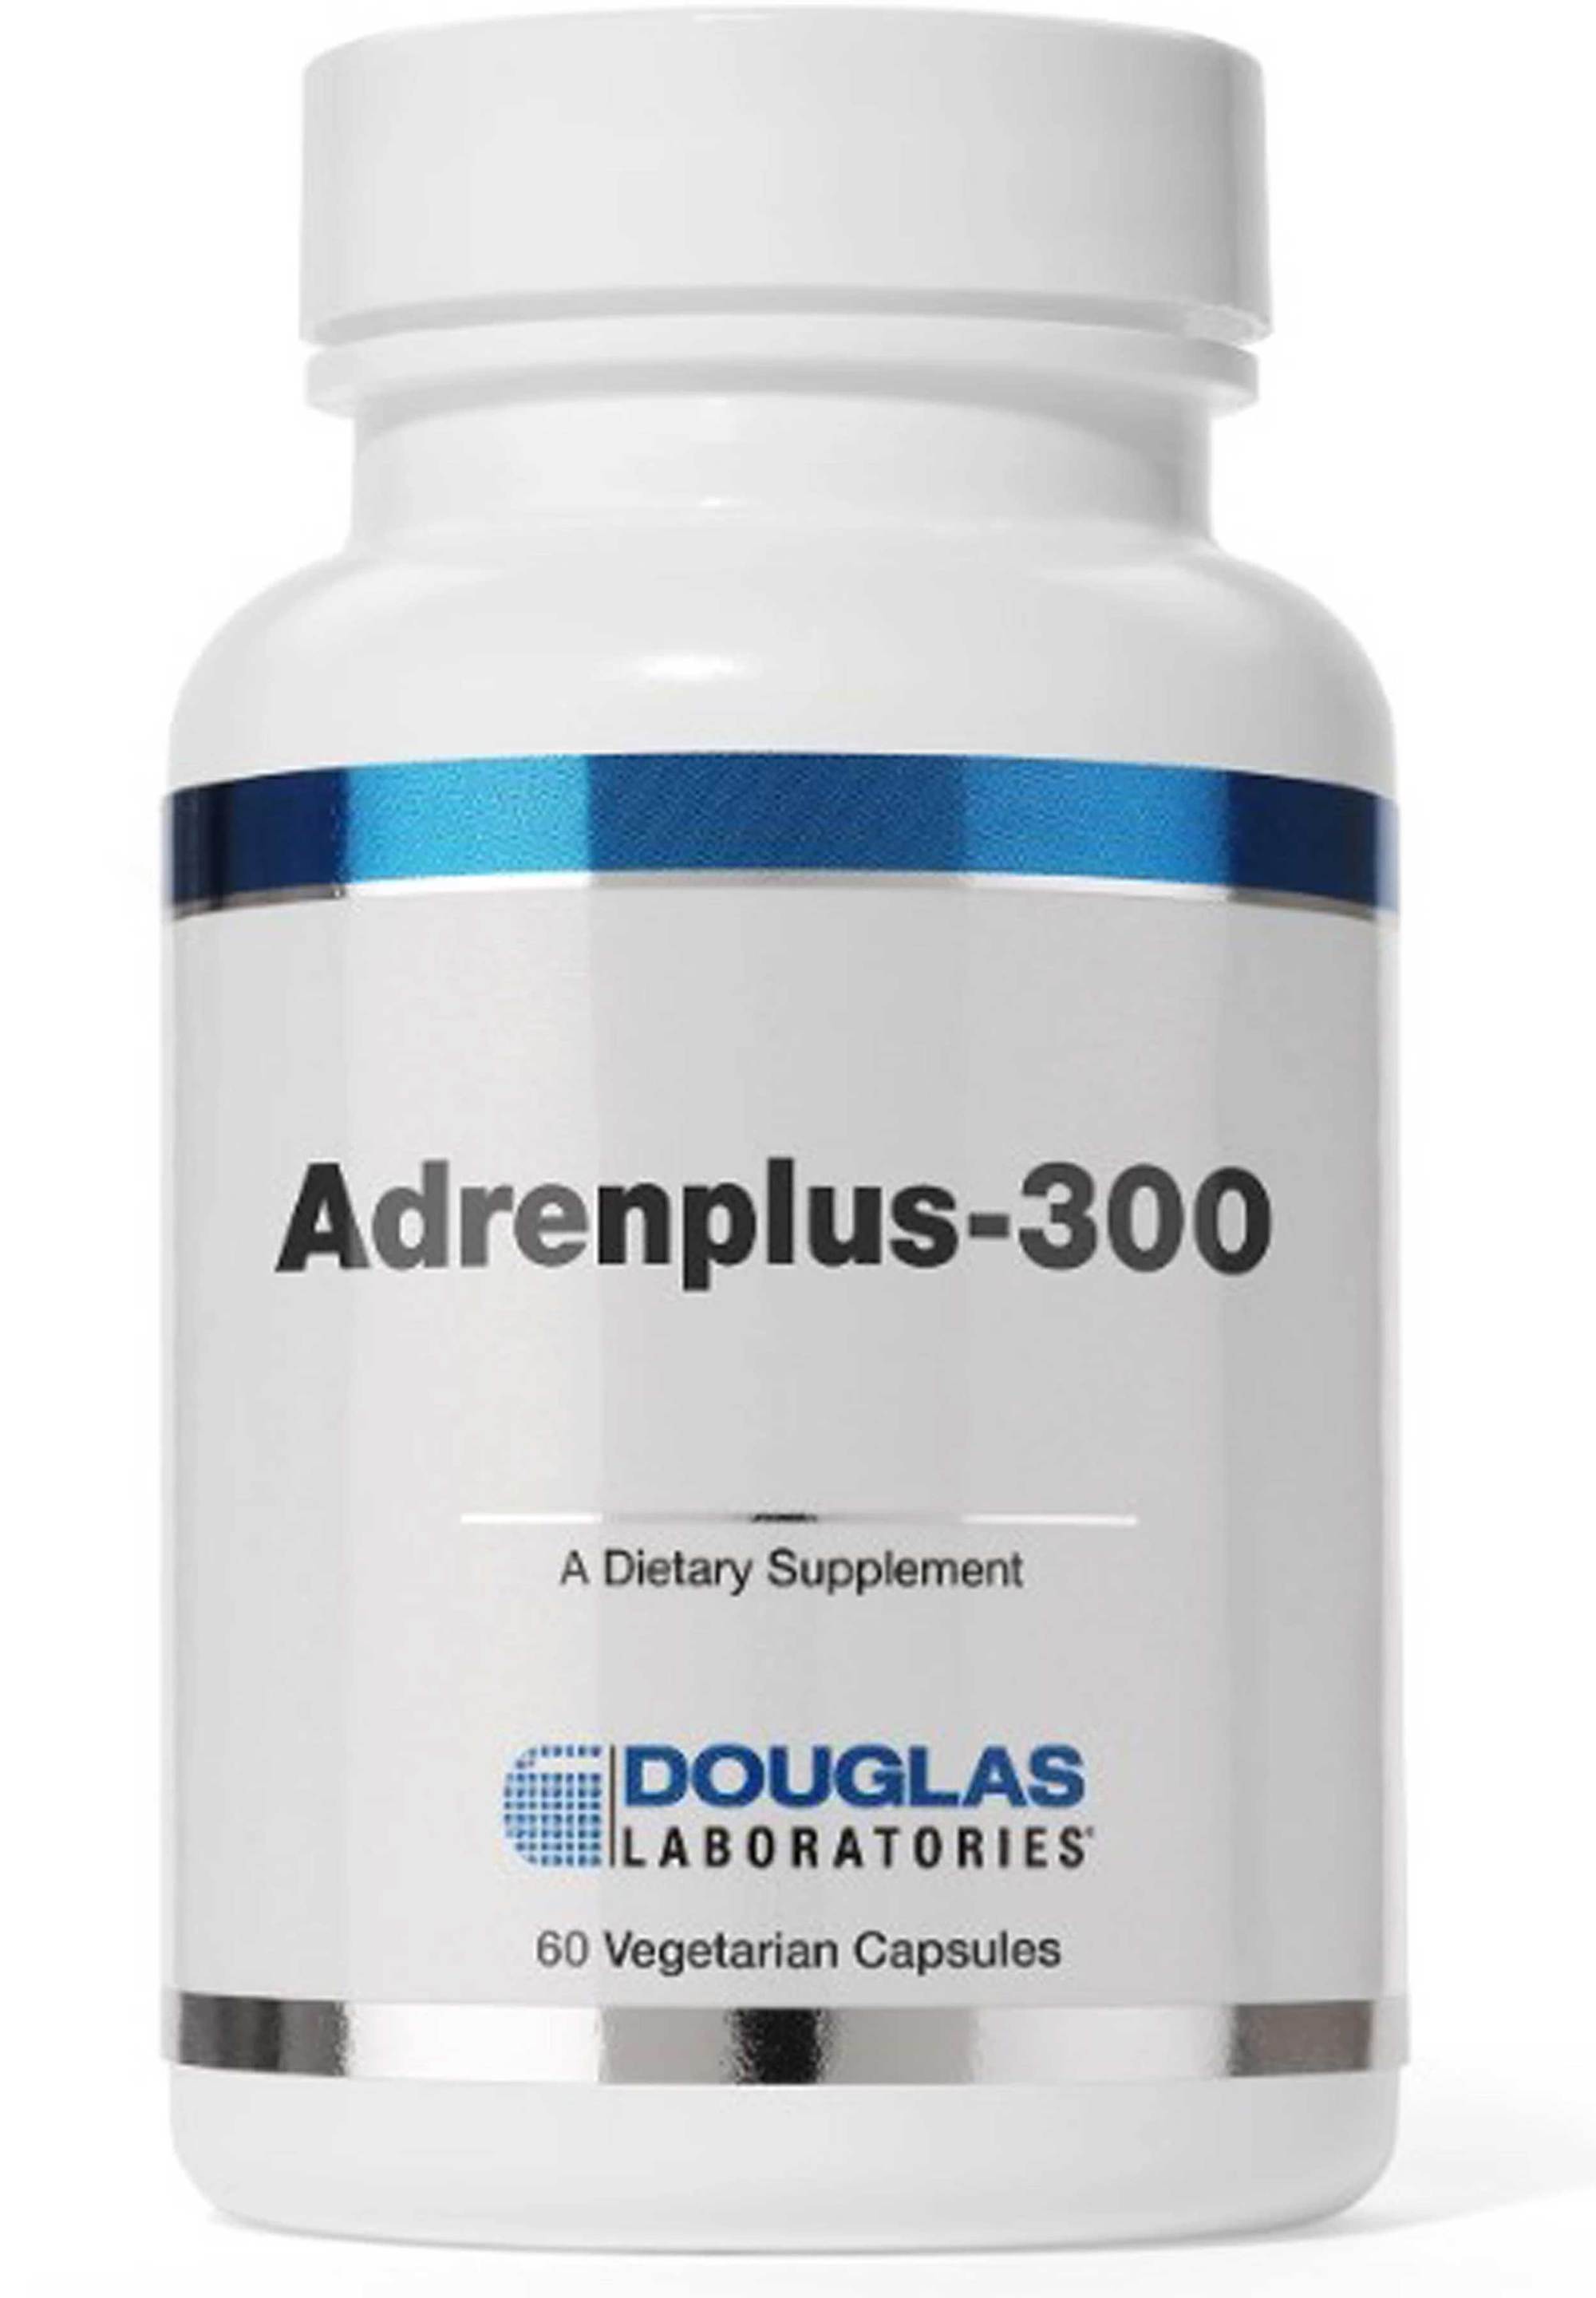 ADRENPLUS-300